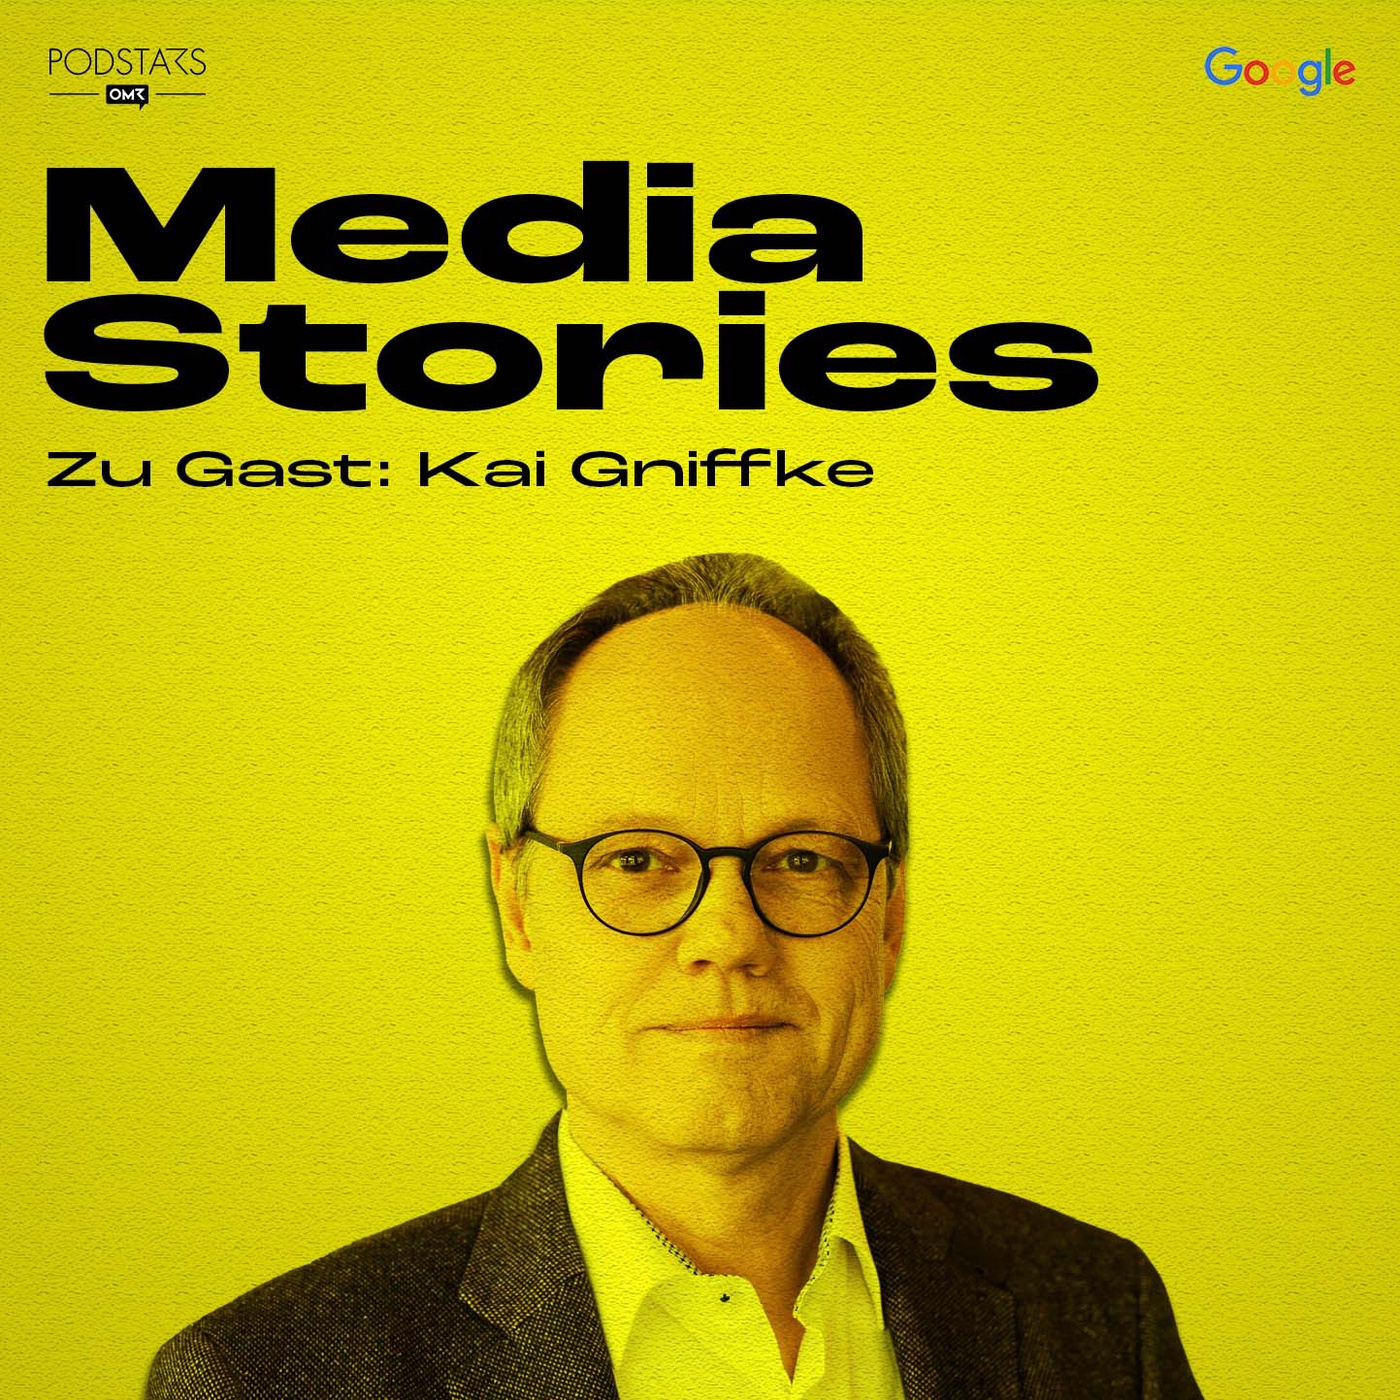 Die Zukunft des öffentlich-rechtlichen Rundfunks - mit Kai Gniffke von der ARD